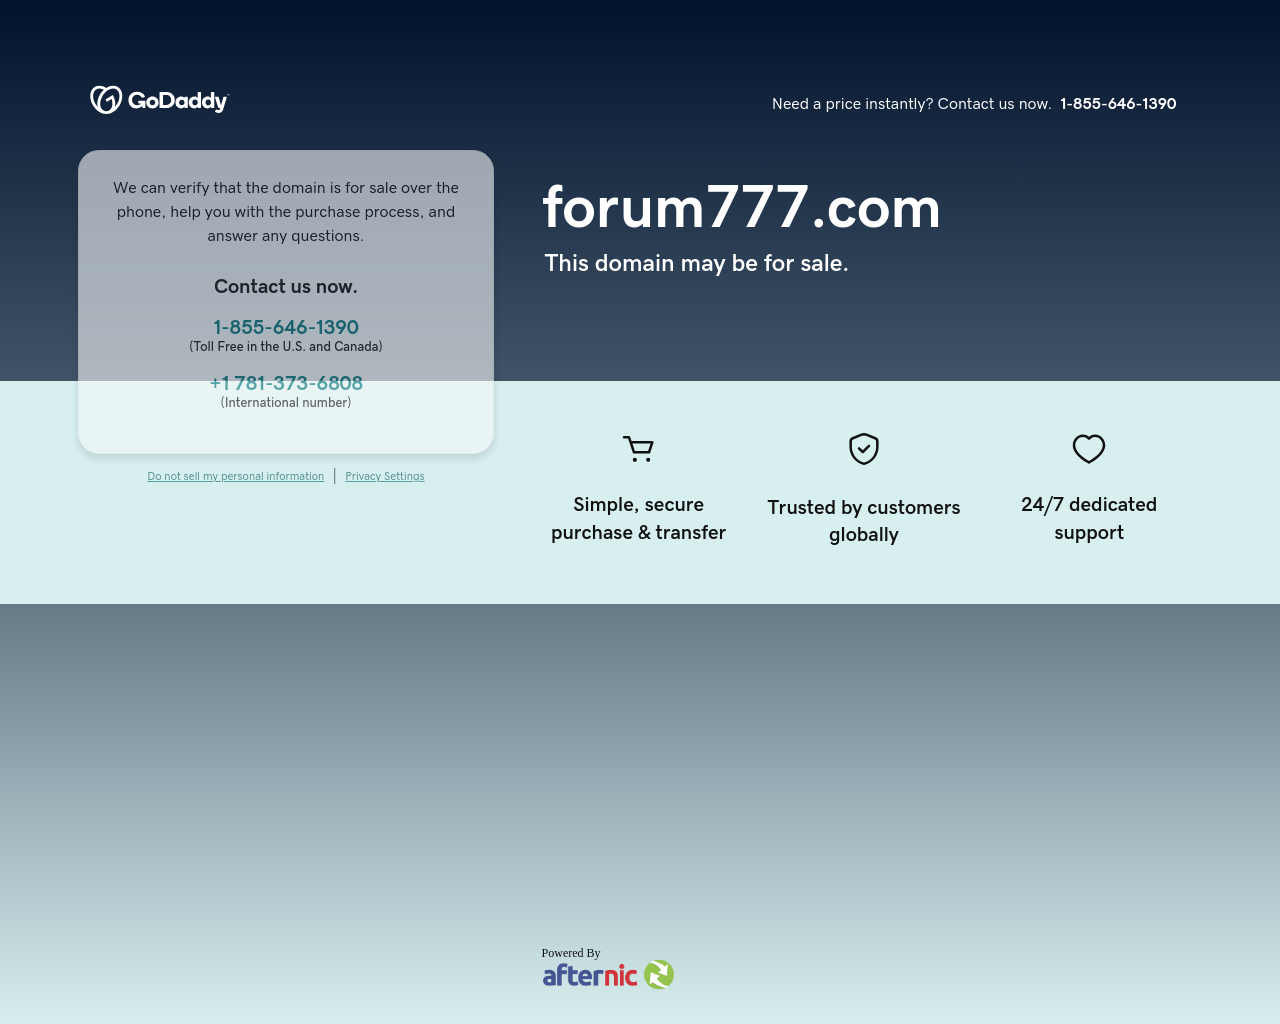 forum777.com